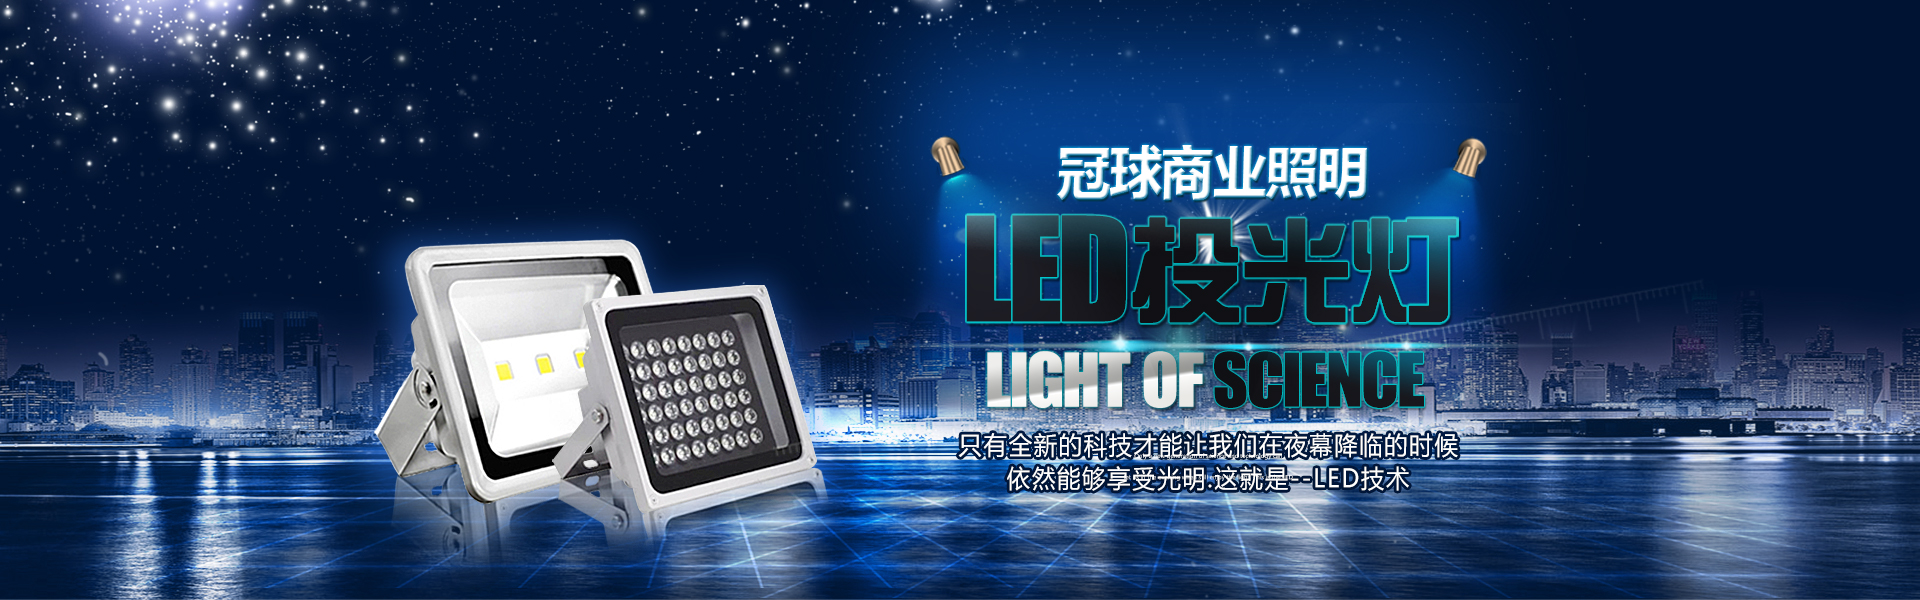 中山LED投光灯介绍其投光灯的性能特点